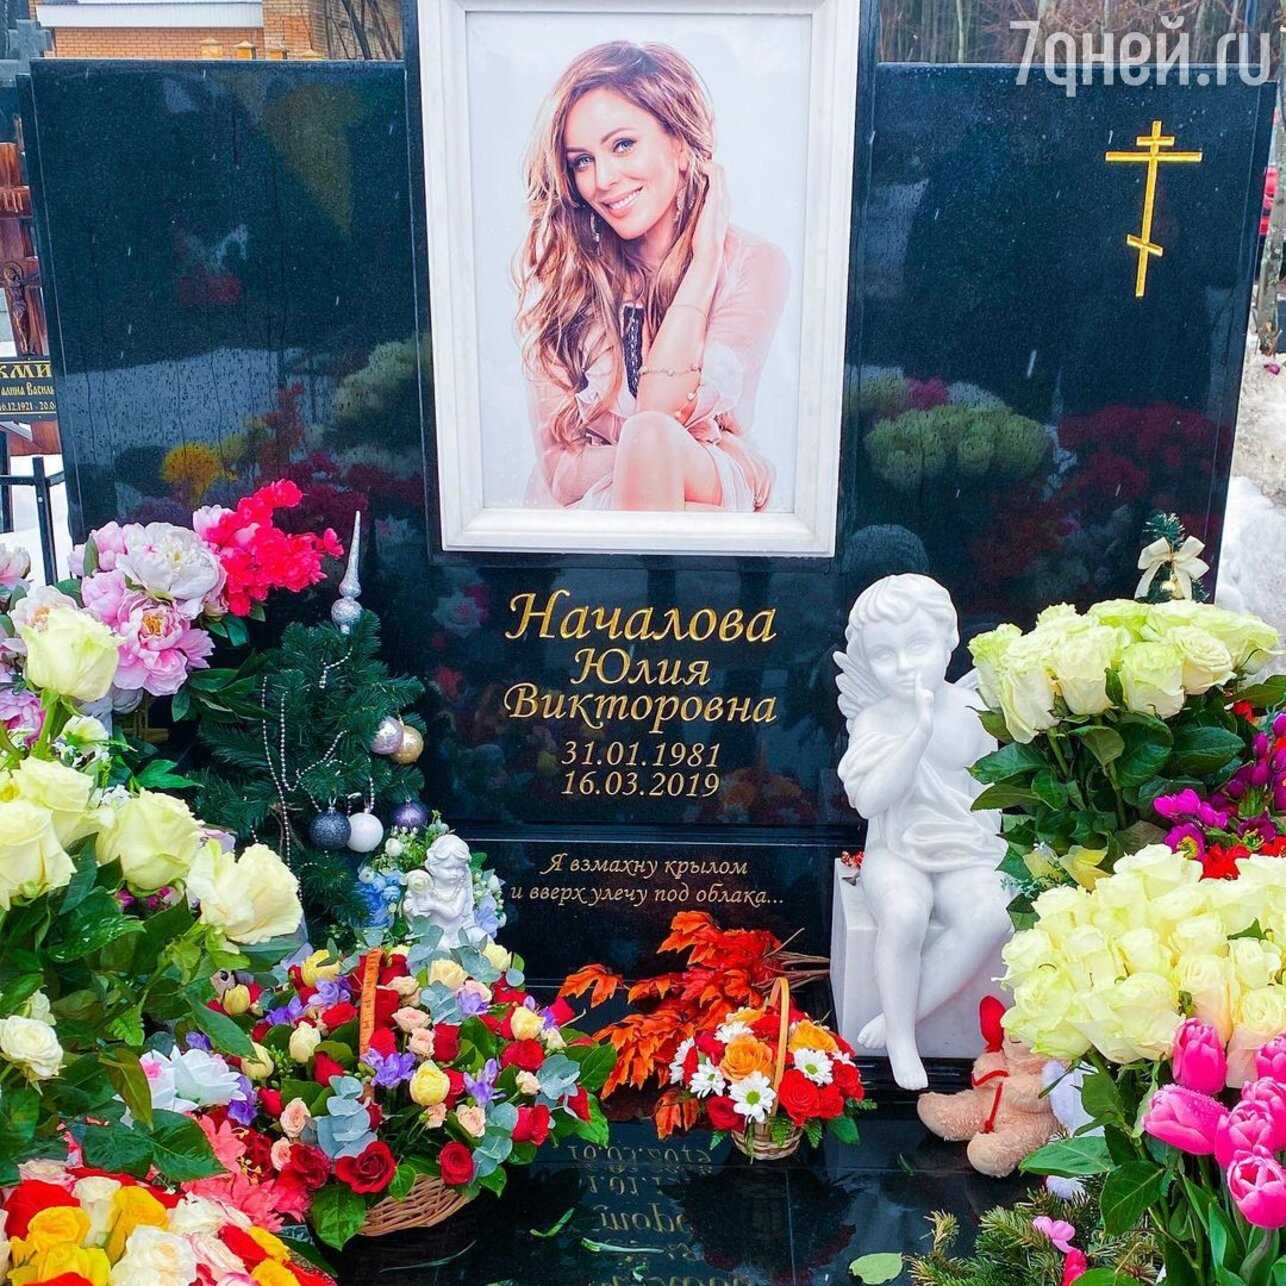 Похоронили певицу. Троекуровское кладбище могила Юлии Началовой.